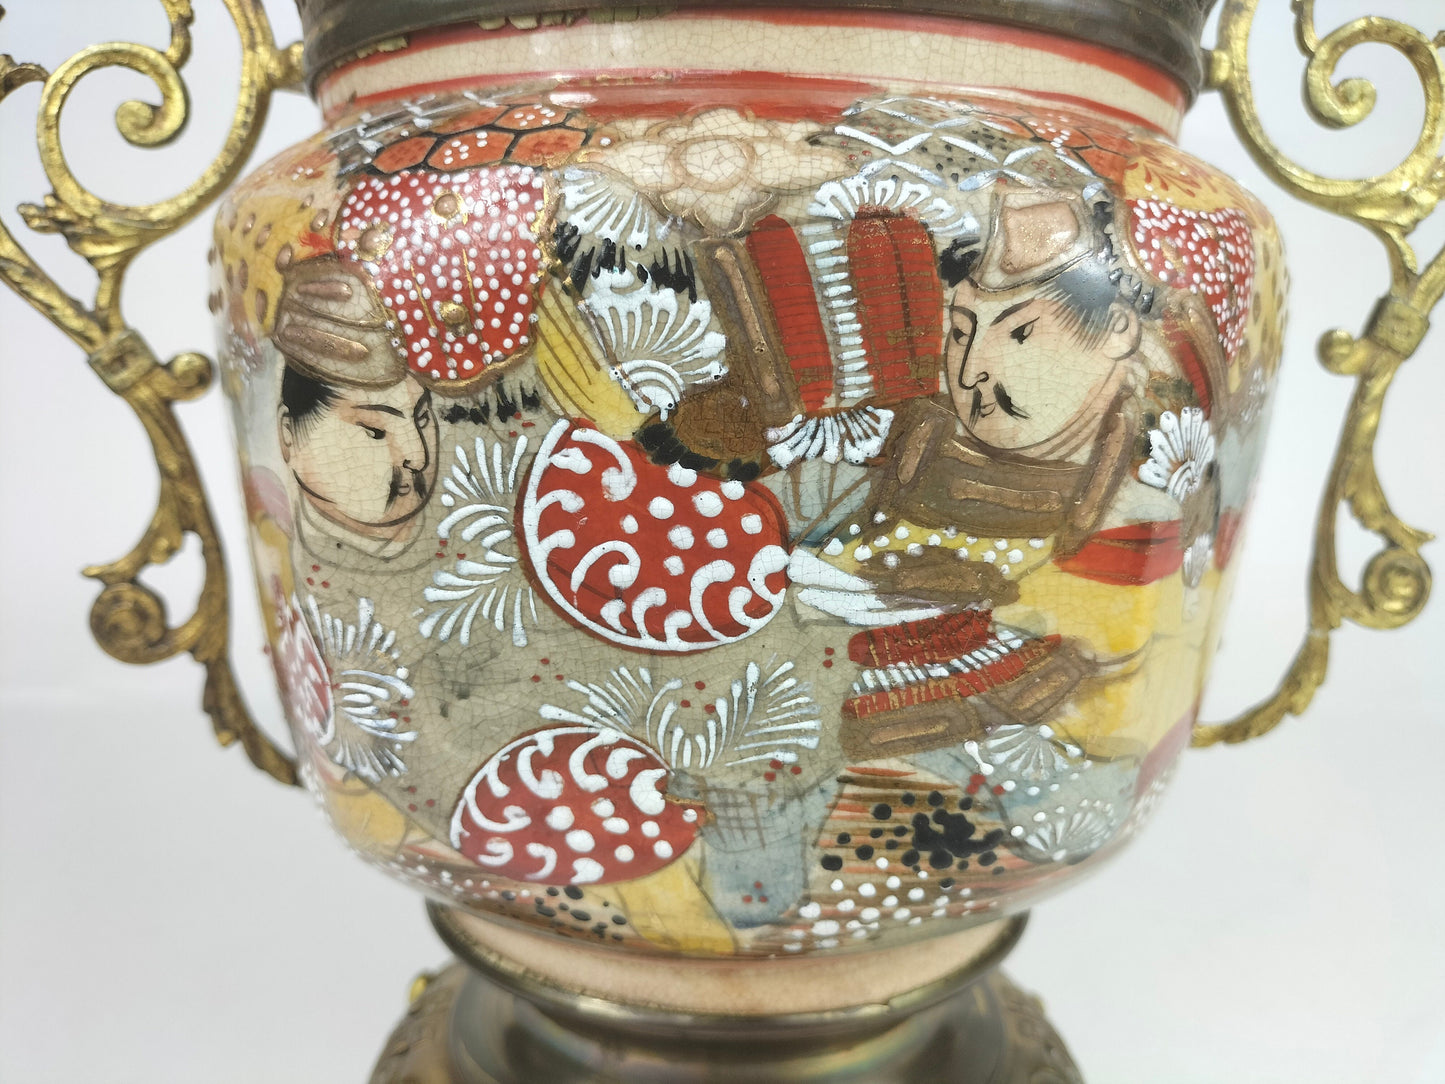 Ancienne jarre satsuma japonaise décorée de laiton doré // 19e siècle - Période Meiji